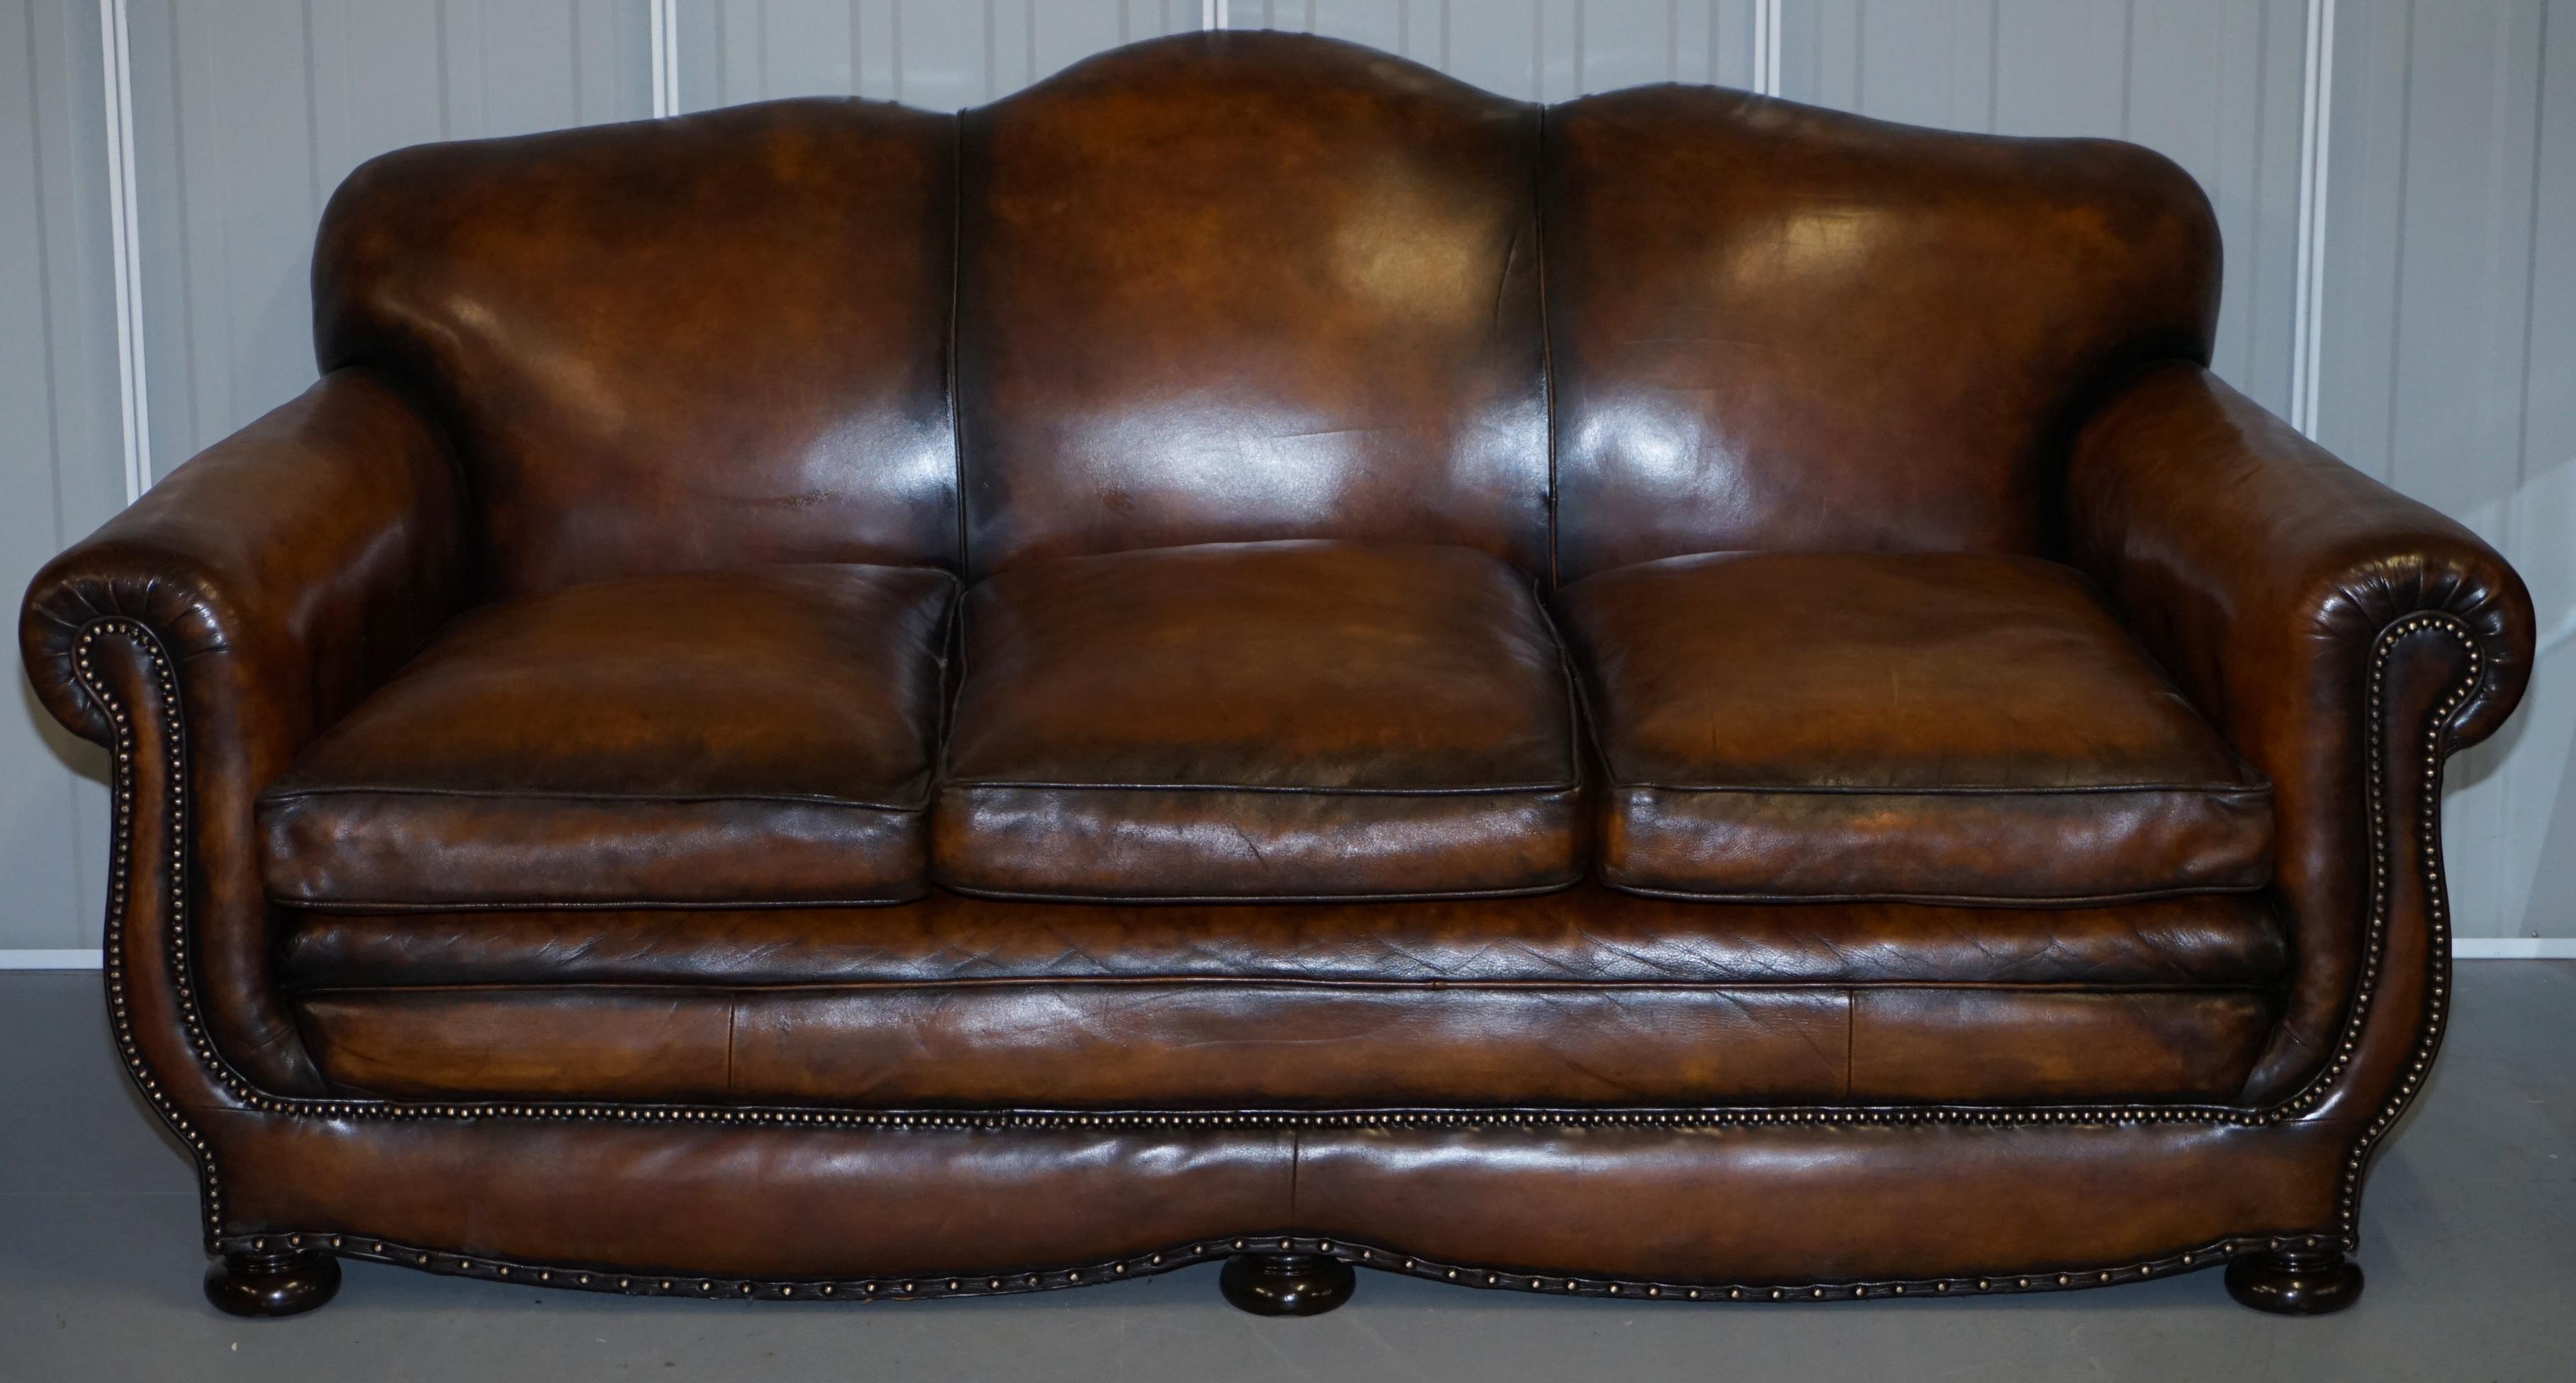 Wir freuen uns, dieses absolut außergewöhnliche, vollständig restaurierte, sehr seltene originale viktorianische Gentleman's Club-Sofa mit Spiralfederung und seltener Moustache-Rückenlehne zum Verkauf anbieten zu können

Dies ist eines der am